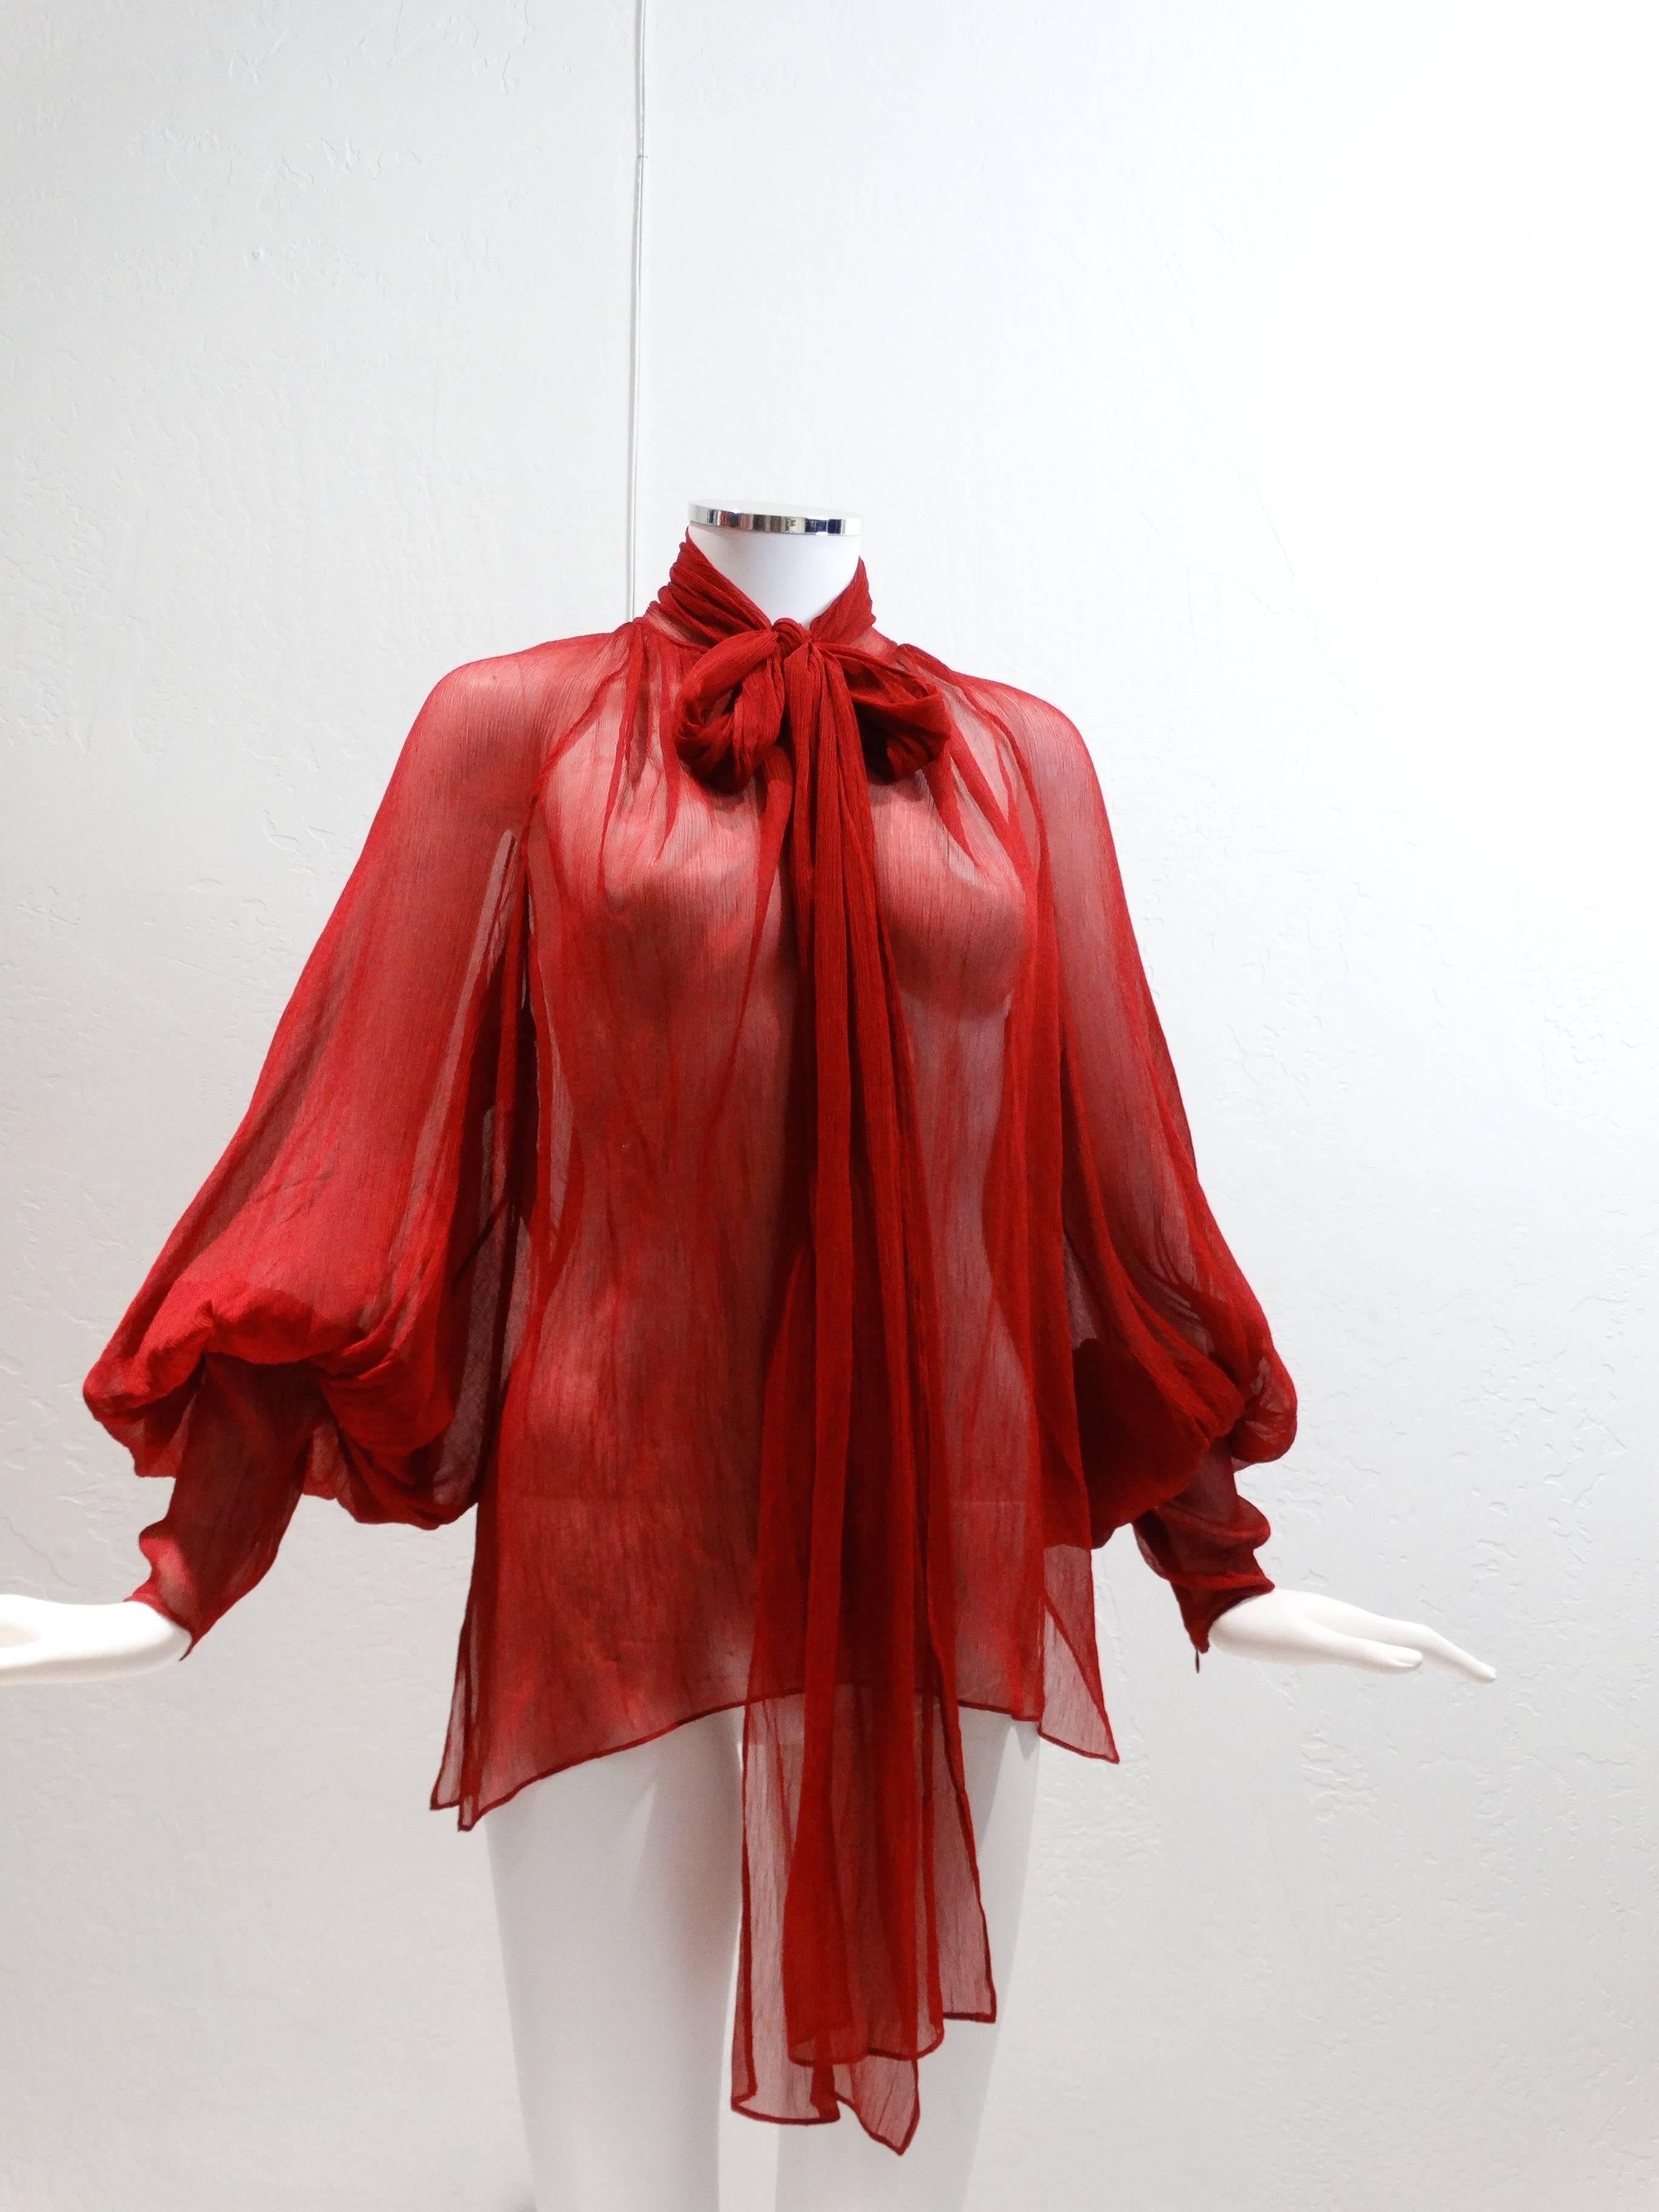 Women's 2007 Hermes Silk Blouse designed by Jean Paul Gaultier